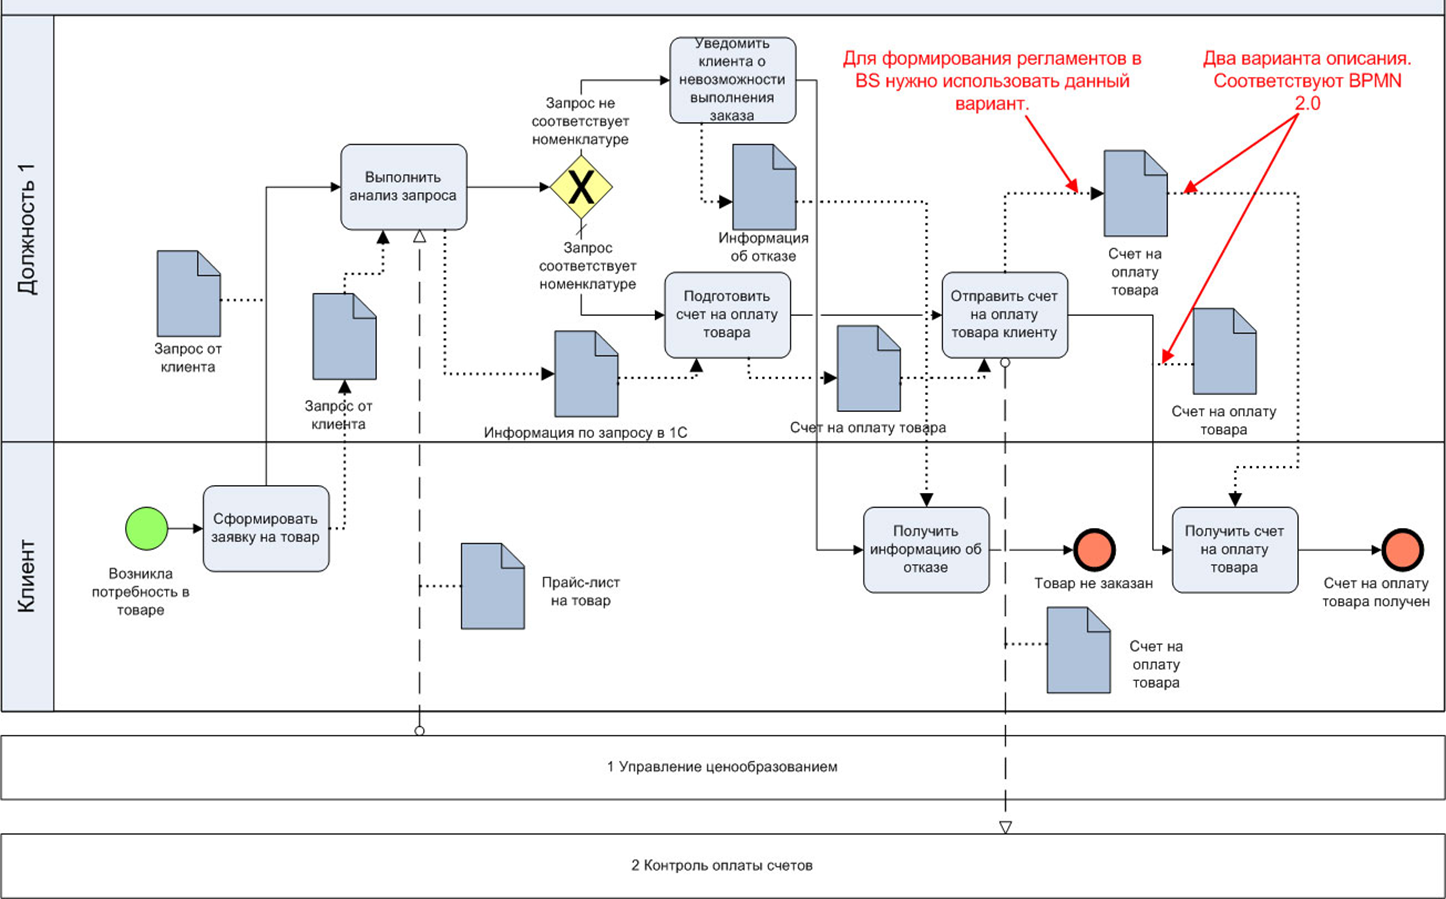 Модель описания бизнес процесса. Схема процесса в нотации BPMN. Диаграмма бизнес процессов BPMN 2.0. Схема бизнес процесса в нотации BPMN. Бизнес процесс BPMN 2.0.